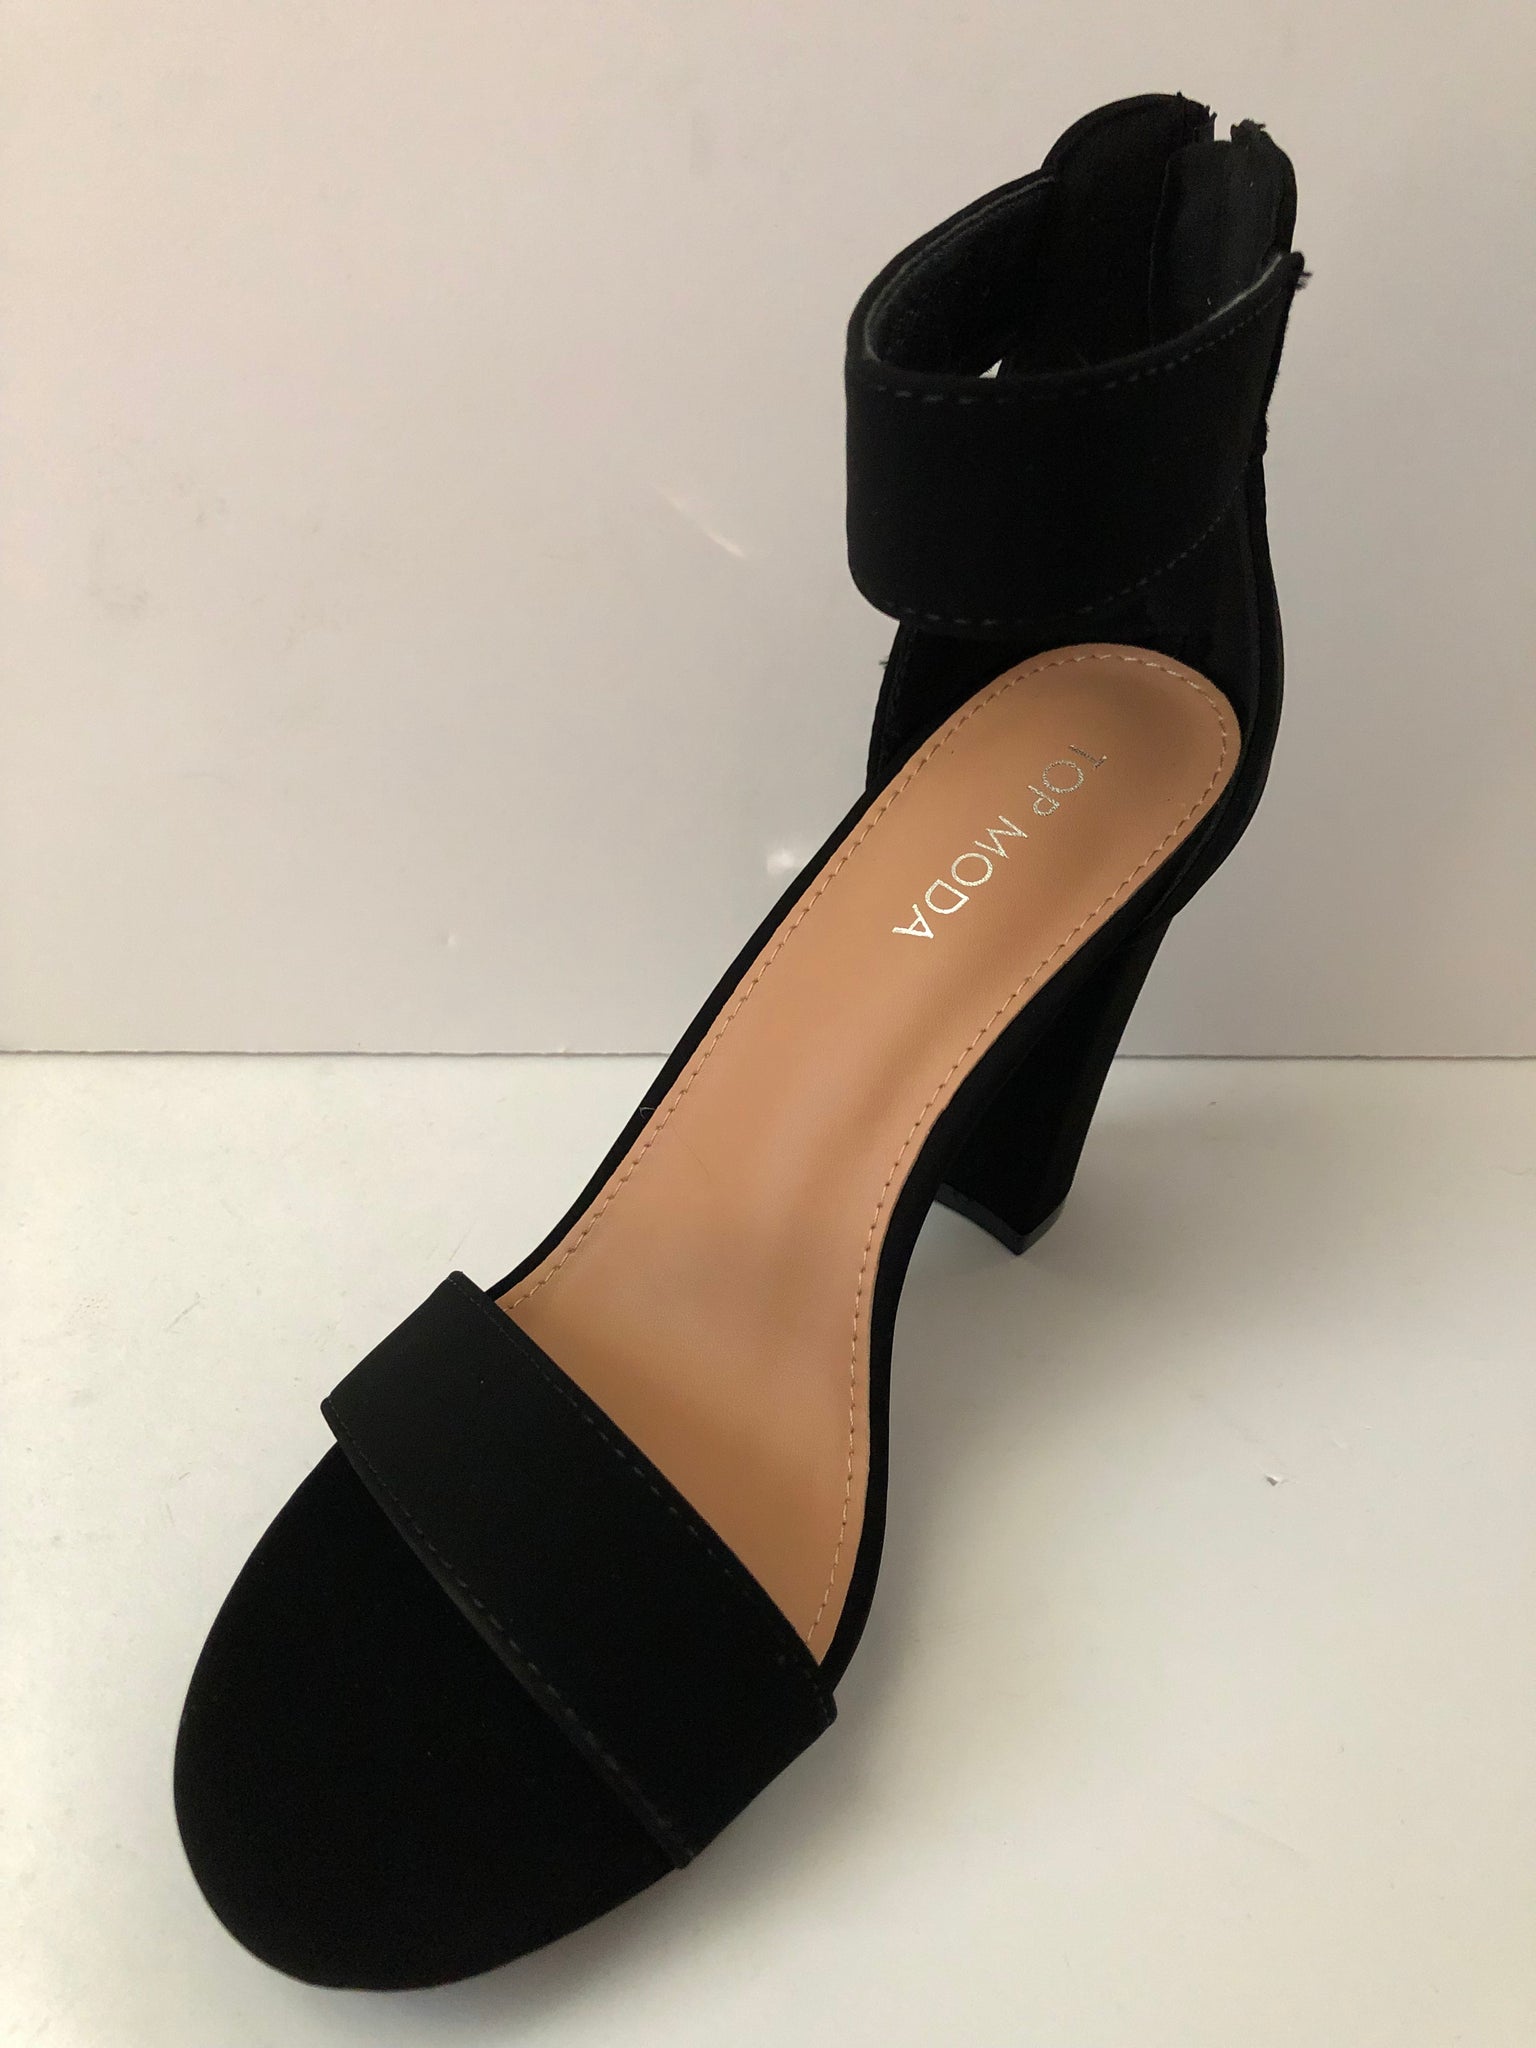 Torrid Women's High Heels Open Toe Ankle Strap Sandals Black Shoes 8 Wide  Width | eBay